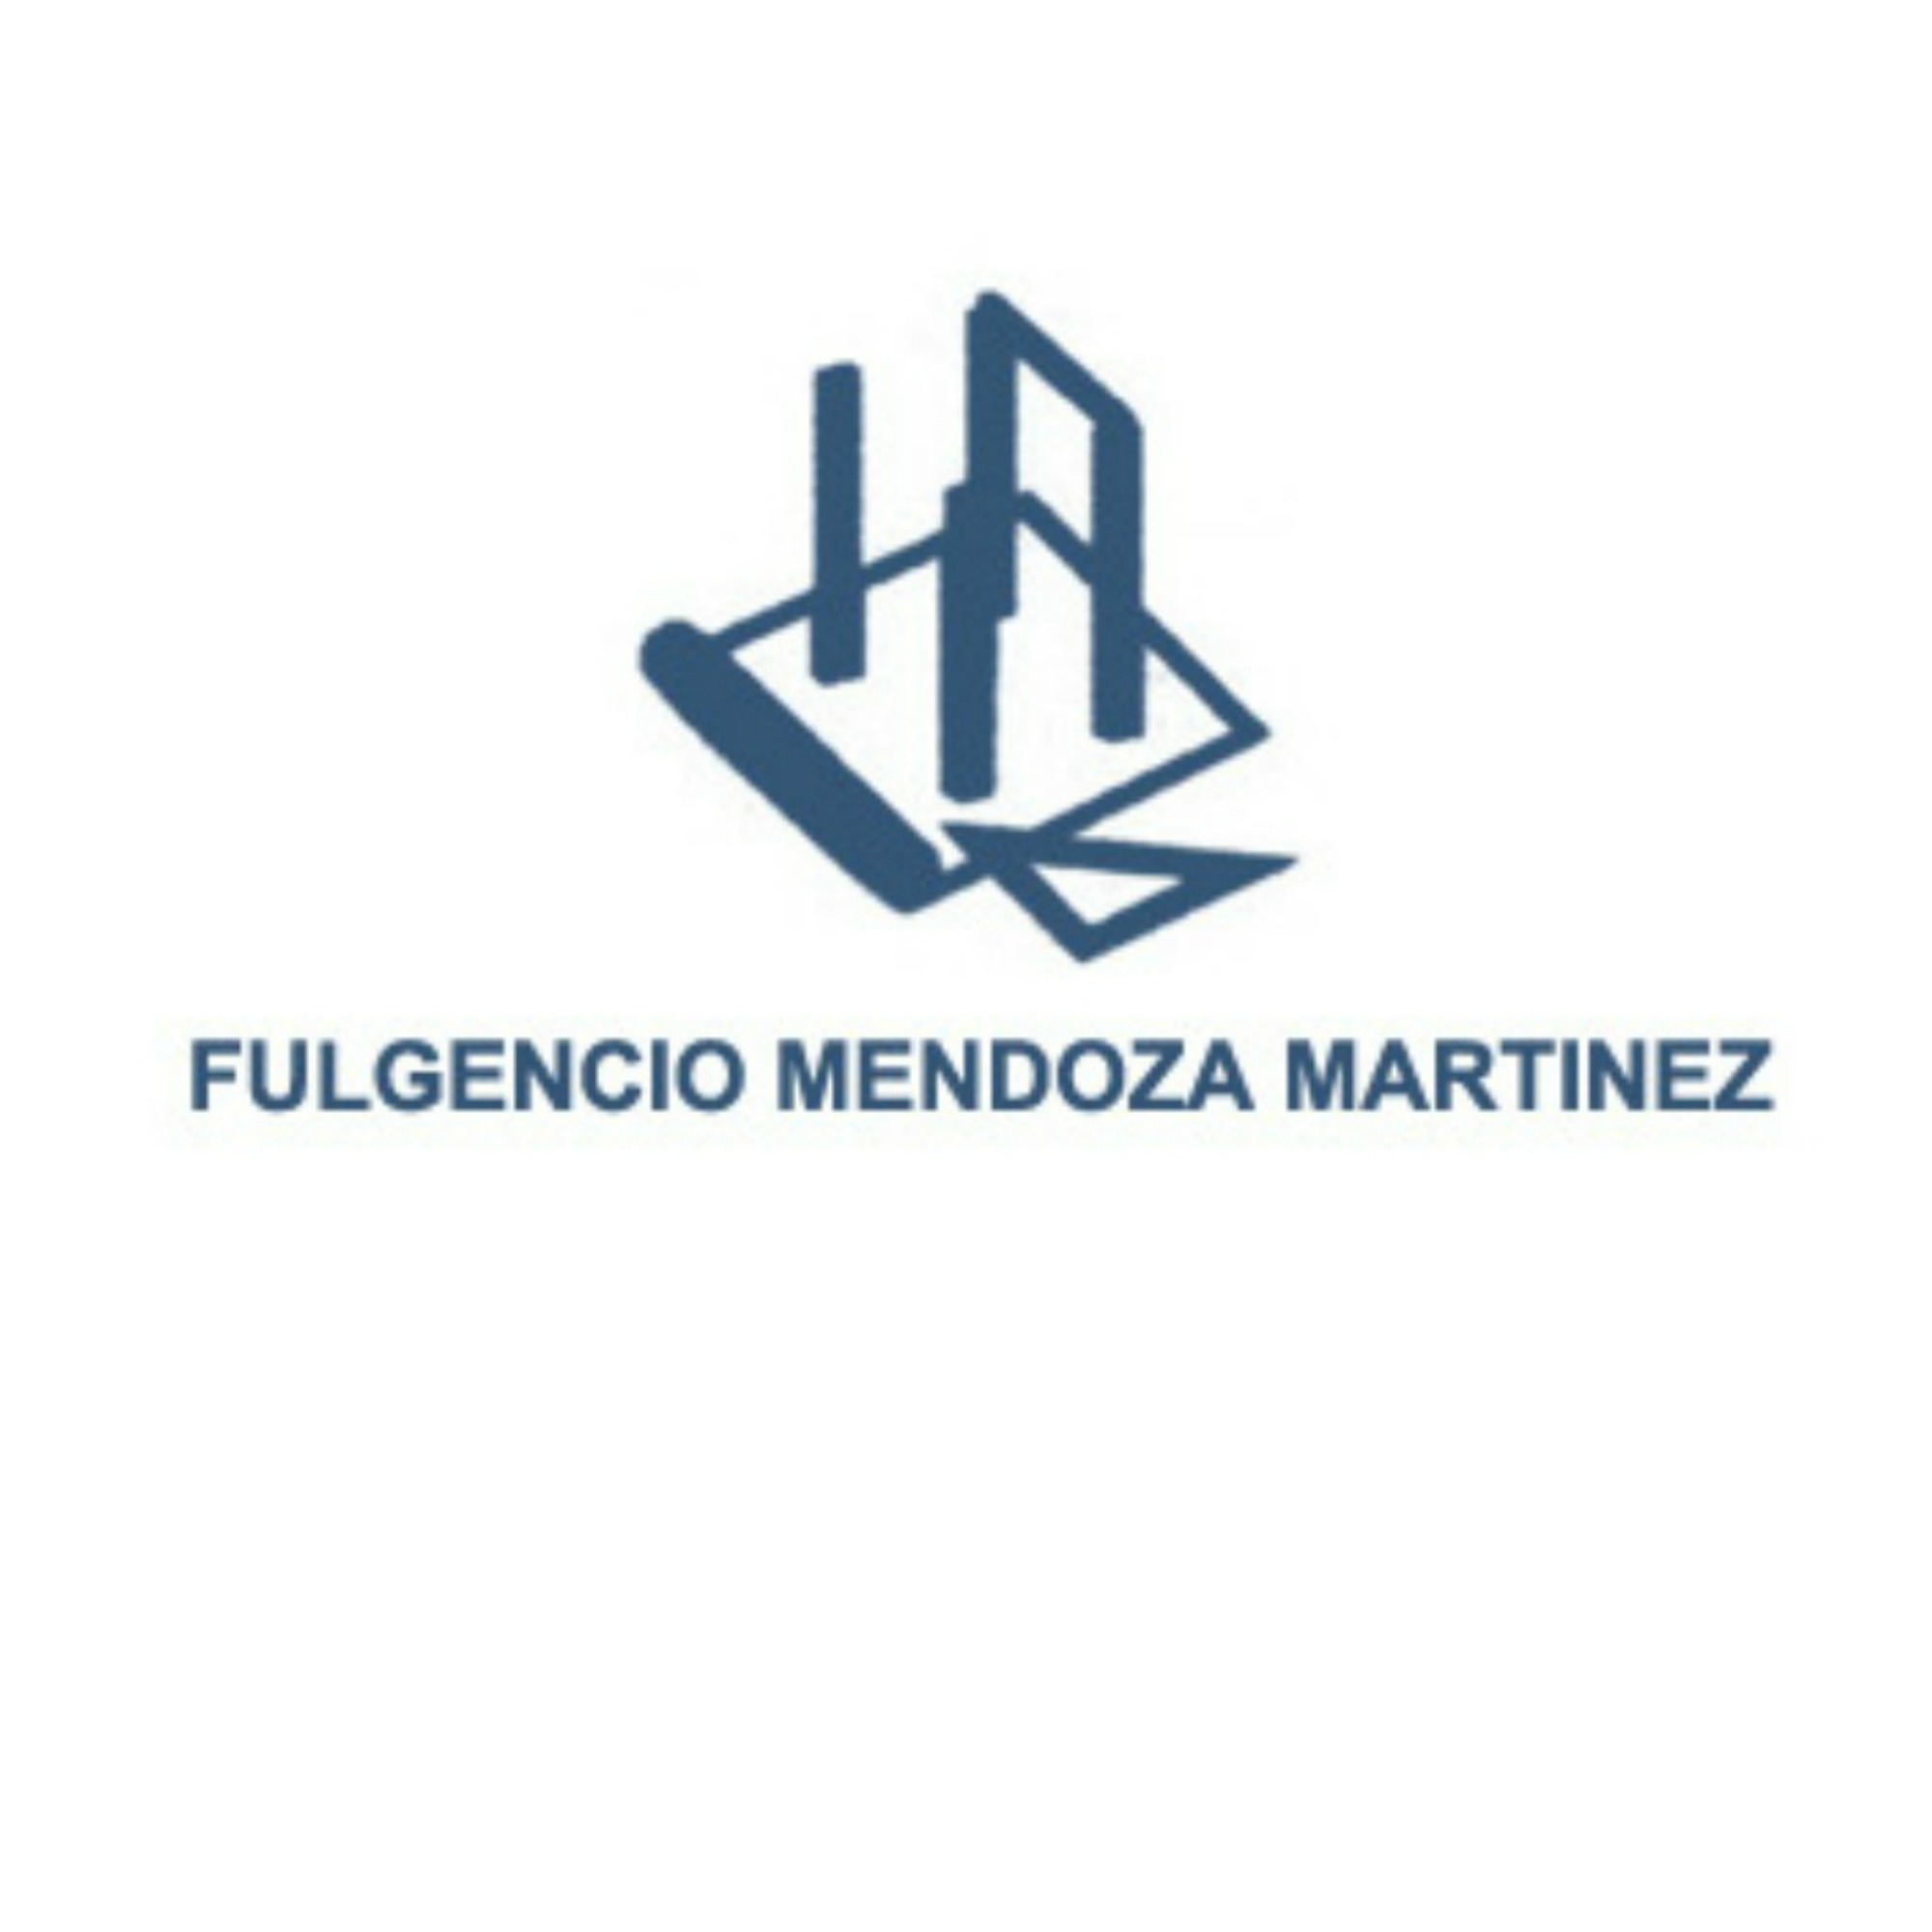 Fulgencio Mendoza Martínez